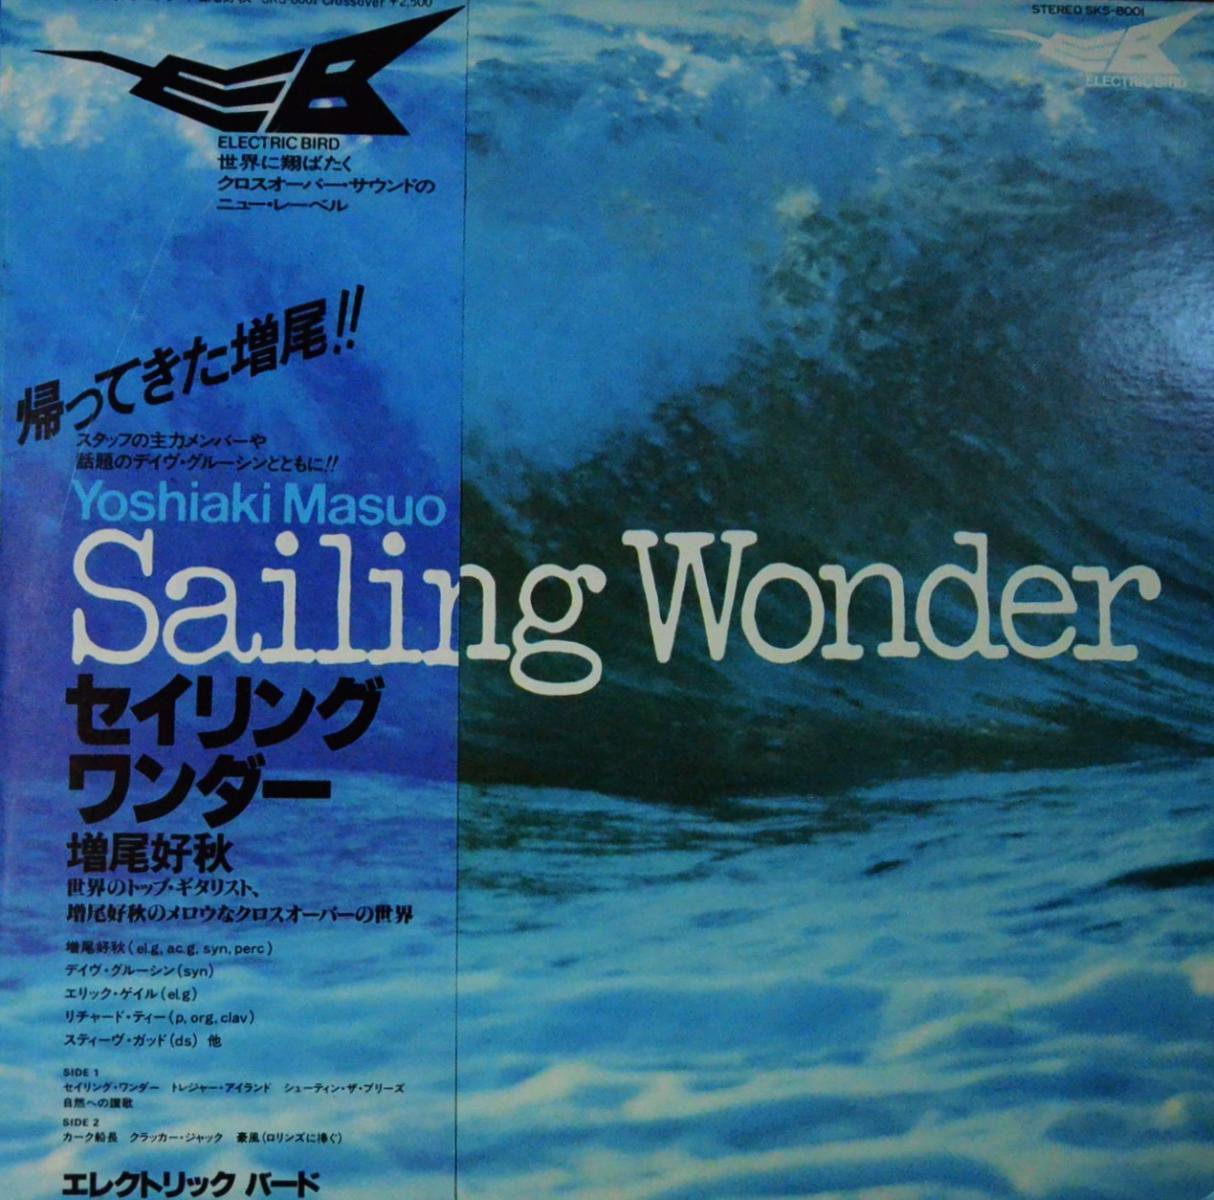 増尾好秋 YOSHIAKI MASUO / セイリング・ワンダー SAILING WONDER (LP 